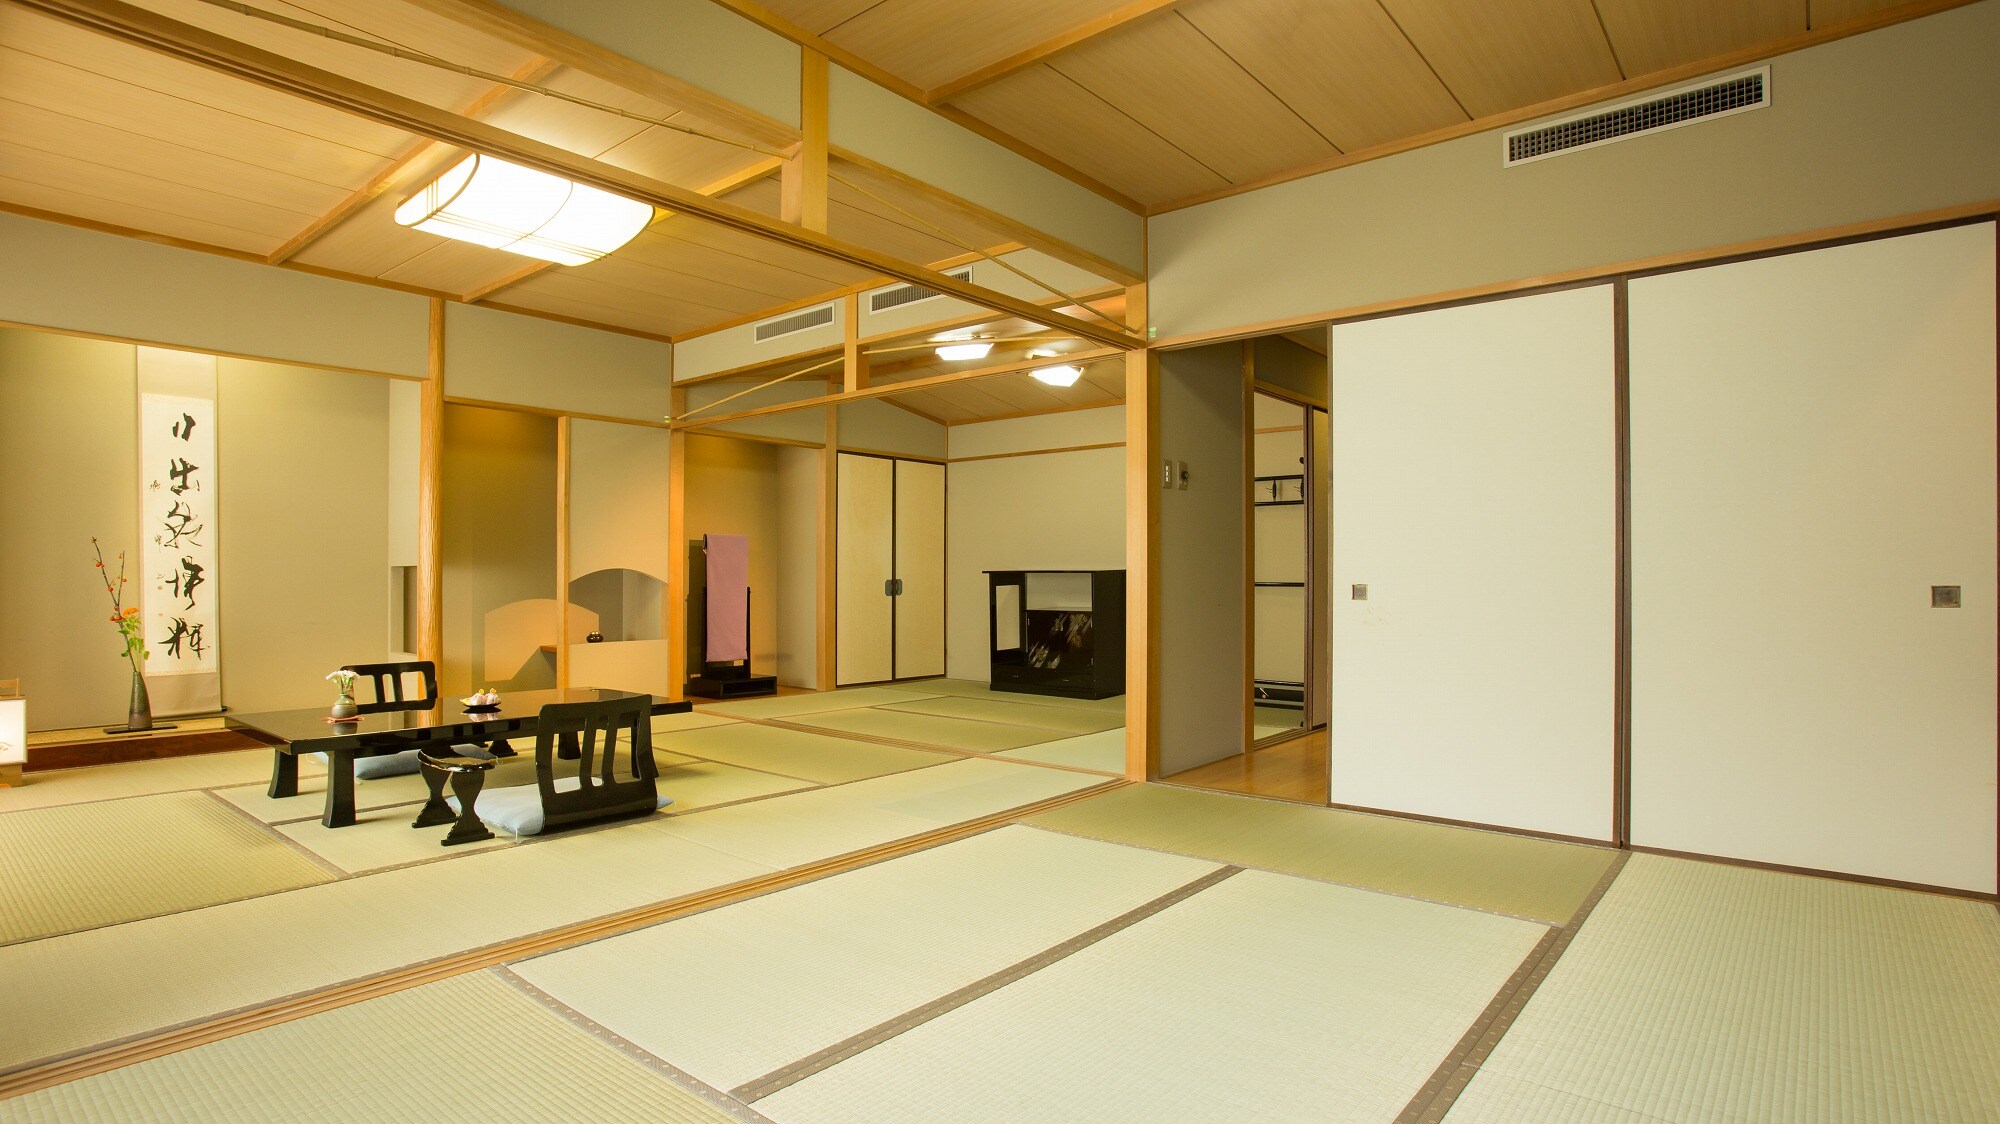 [ห้องสไตล์ญี่ปุ่น] เฟอร์นิเจอร์ที่คัดสรรมาอย่างดีสำหรับห้องที่กว้างขวางเพียงพอสำหรับการพักผ่อน